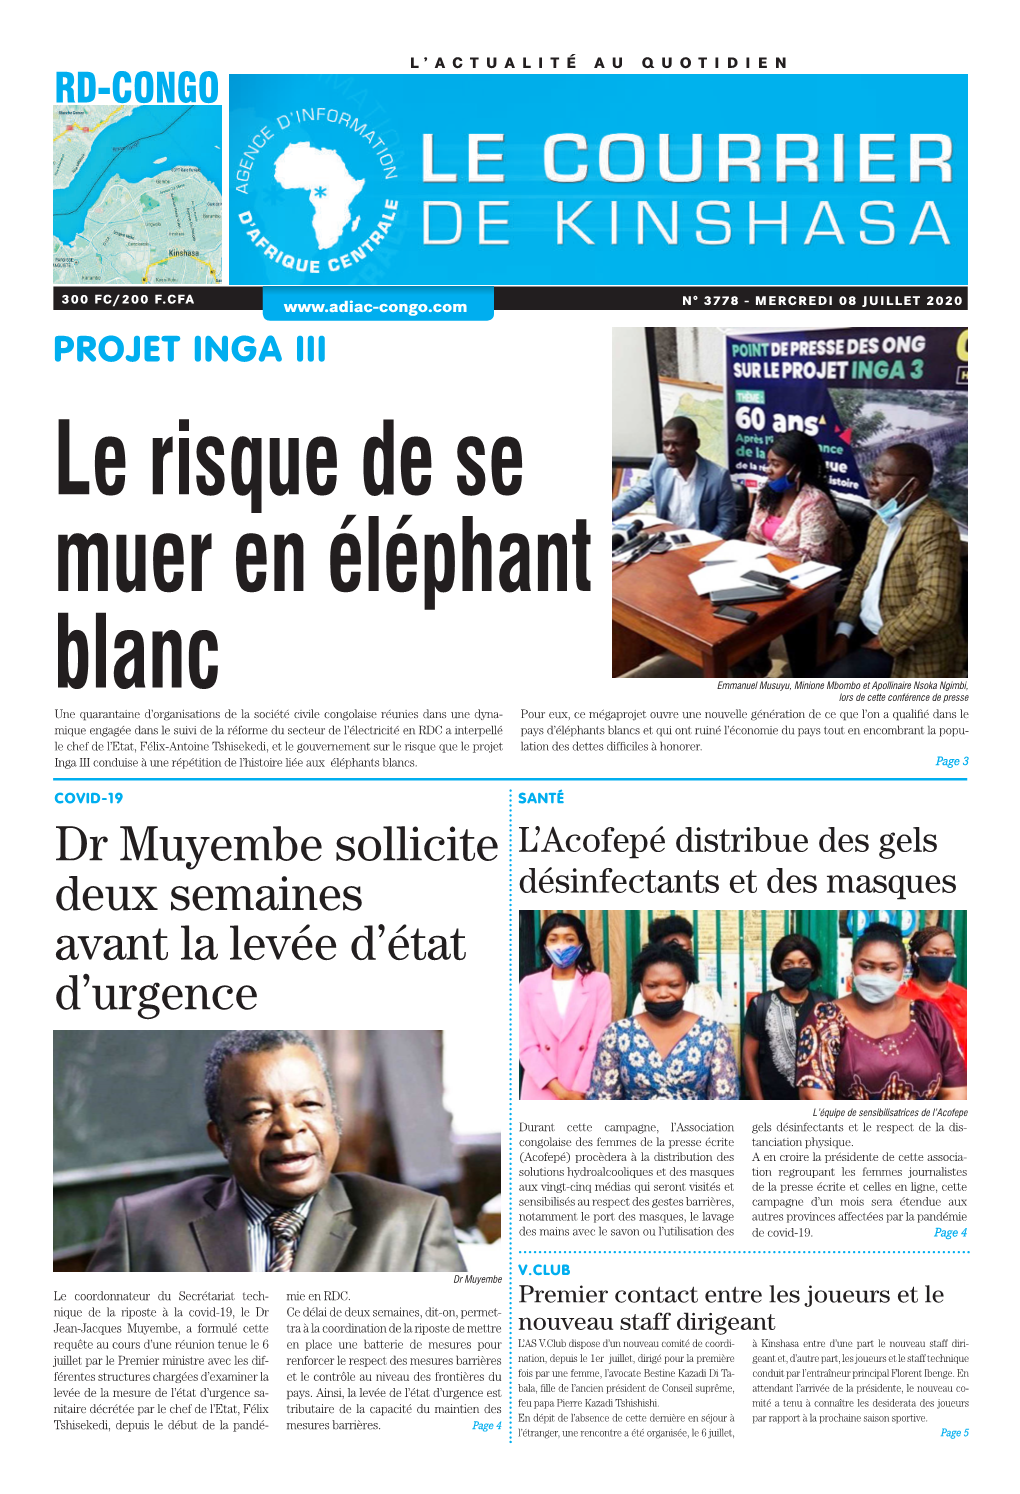 Dr Muyembe Sollicite Deux Semaines Avant La Levée D'état D'urgence